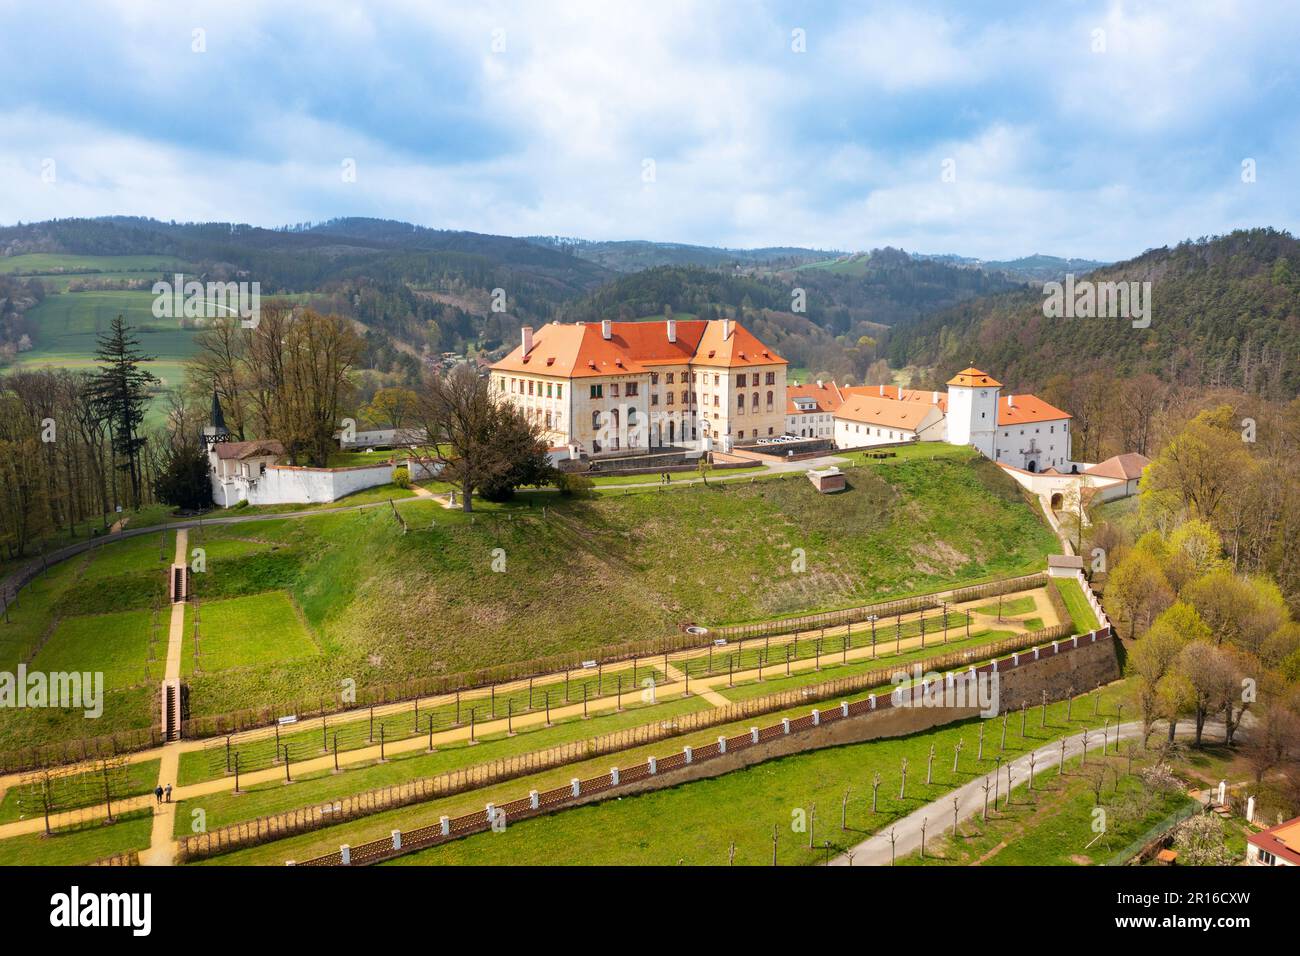 Zámek Kunštát, Jihomoravský kraj, Morava, Ceska republika / castle Kunstat, South Moravia, Czech republic Stock Photo